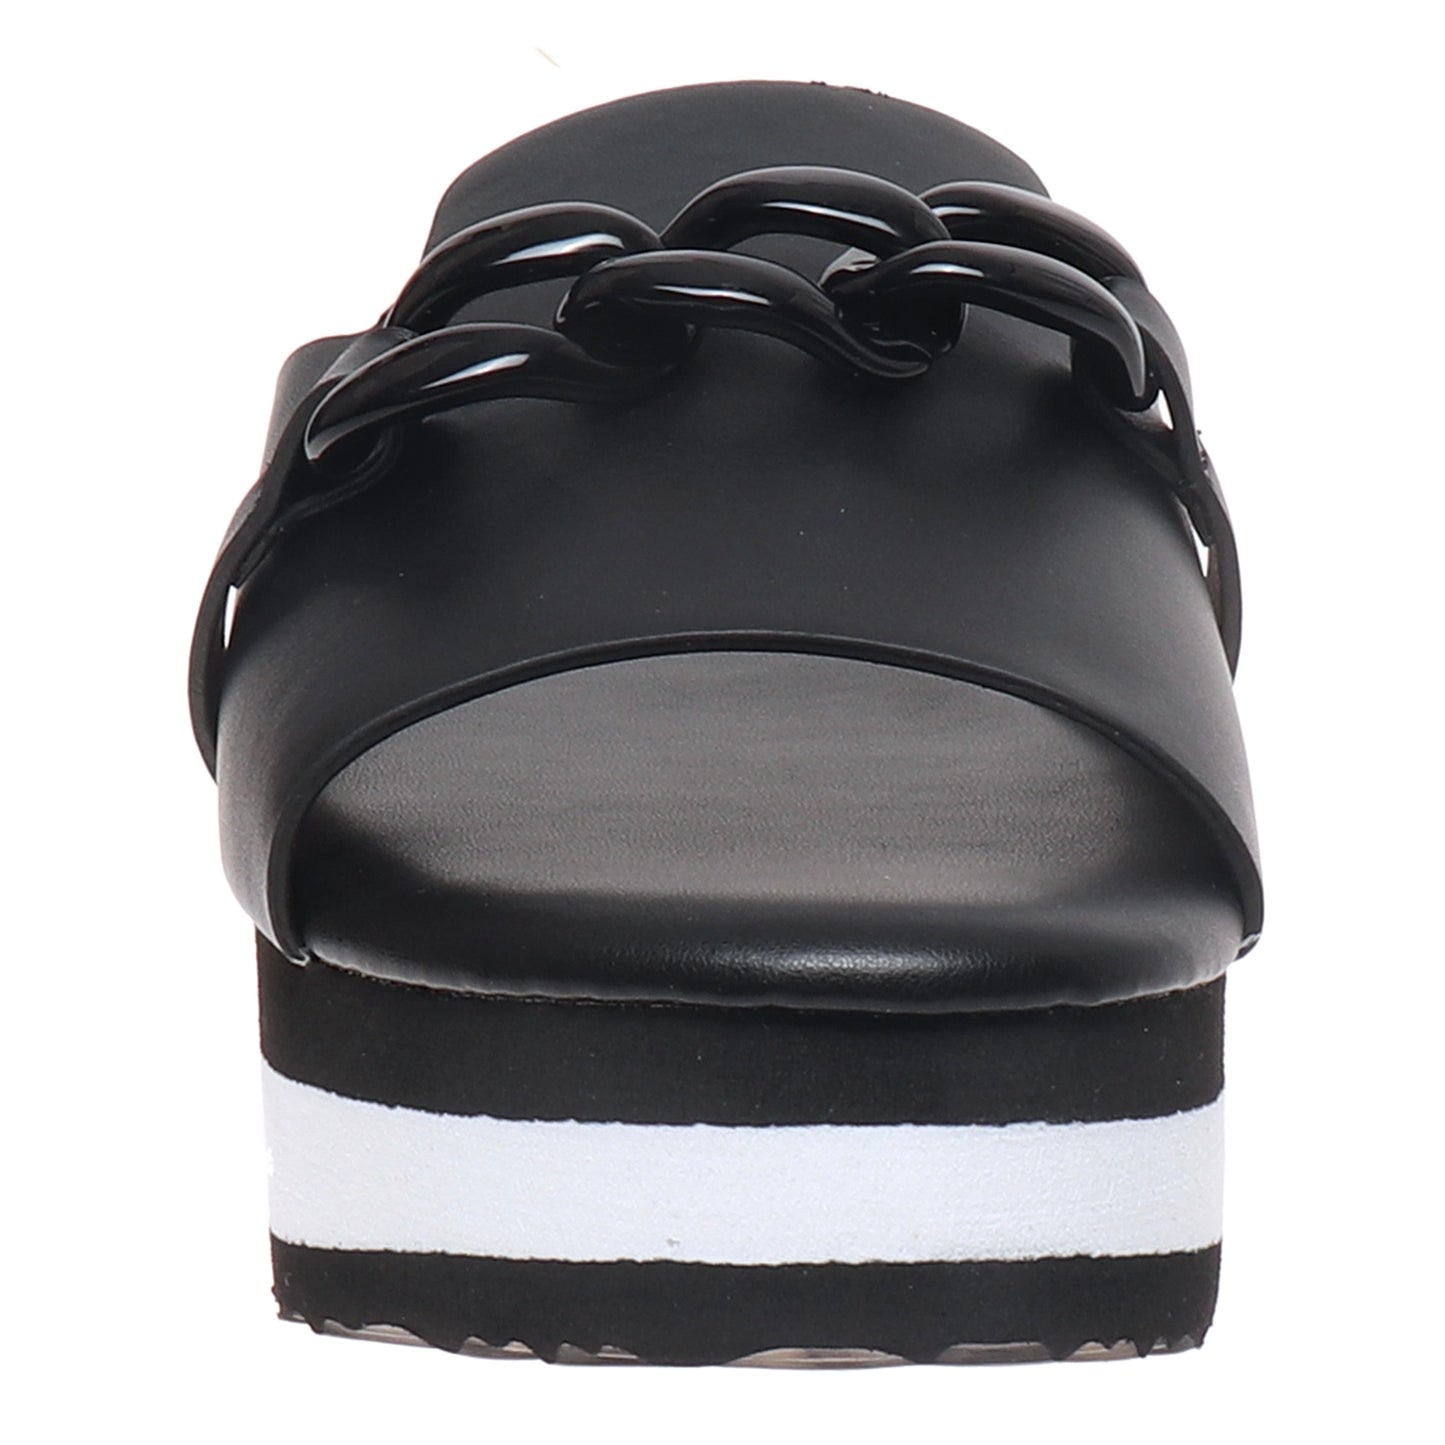 Right Direction Black Platform Sandals